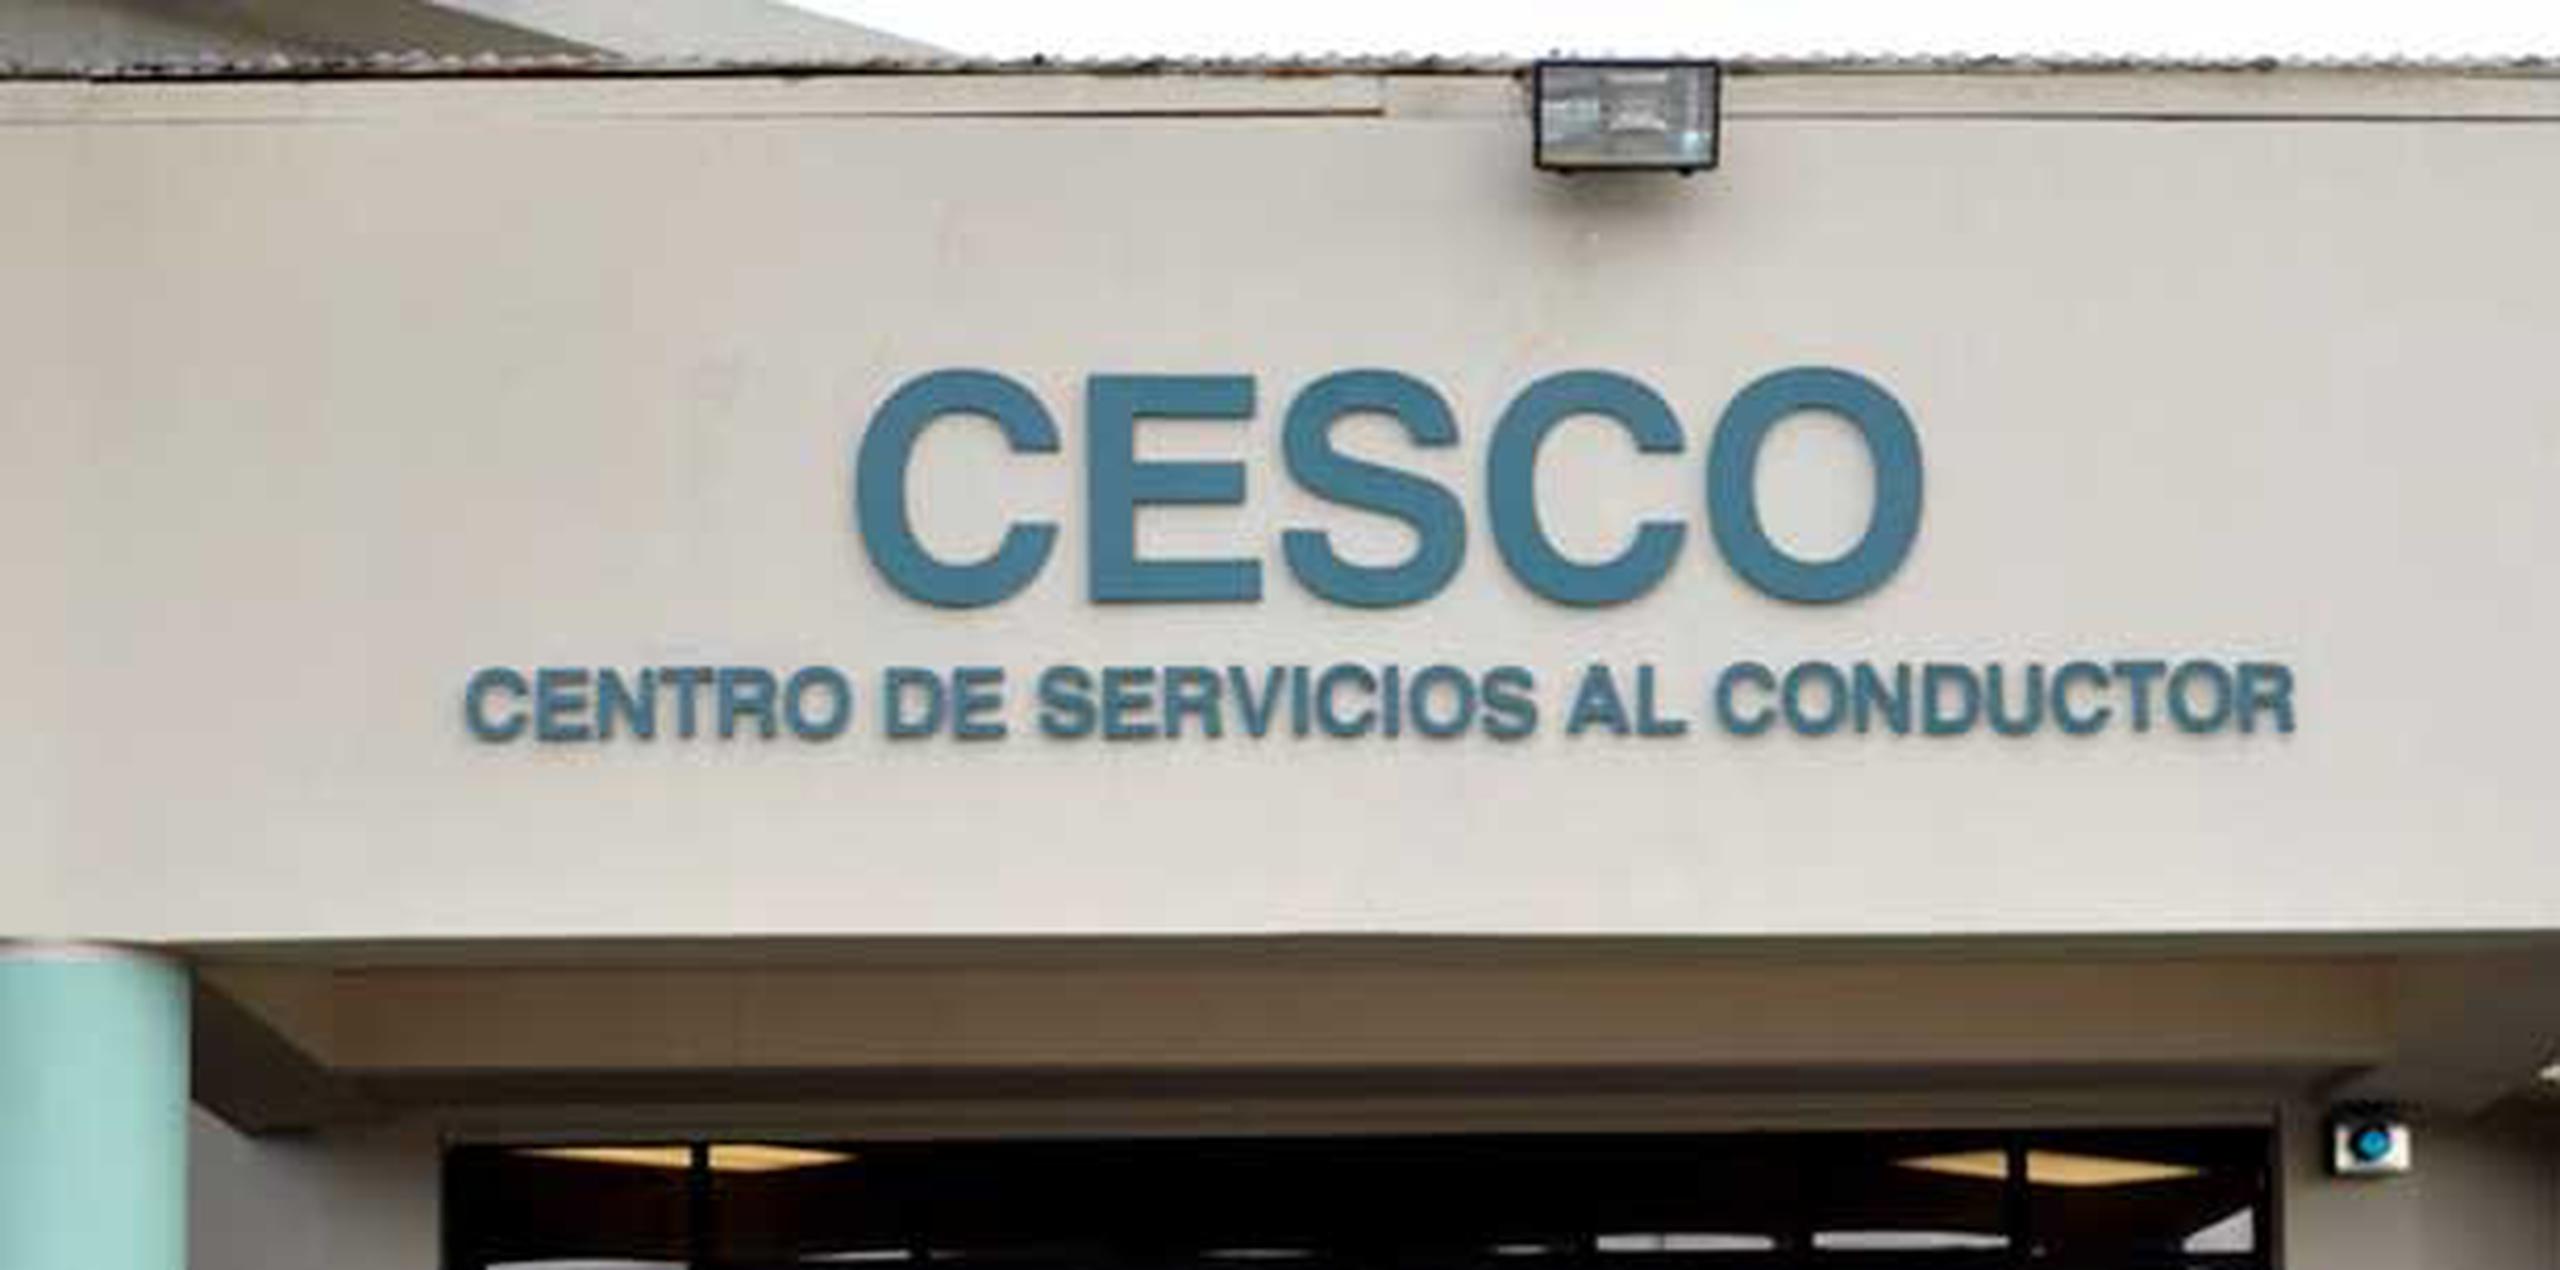 Para obtener más información sobre proyectos y servicios de los Cesco pueden acceder a la página web www.dtop.gov.pr o a través de las redes sociales Facebook y Twitter. (Archivo)